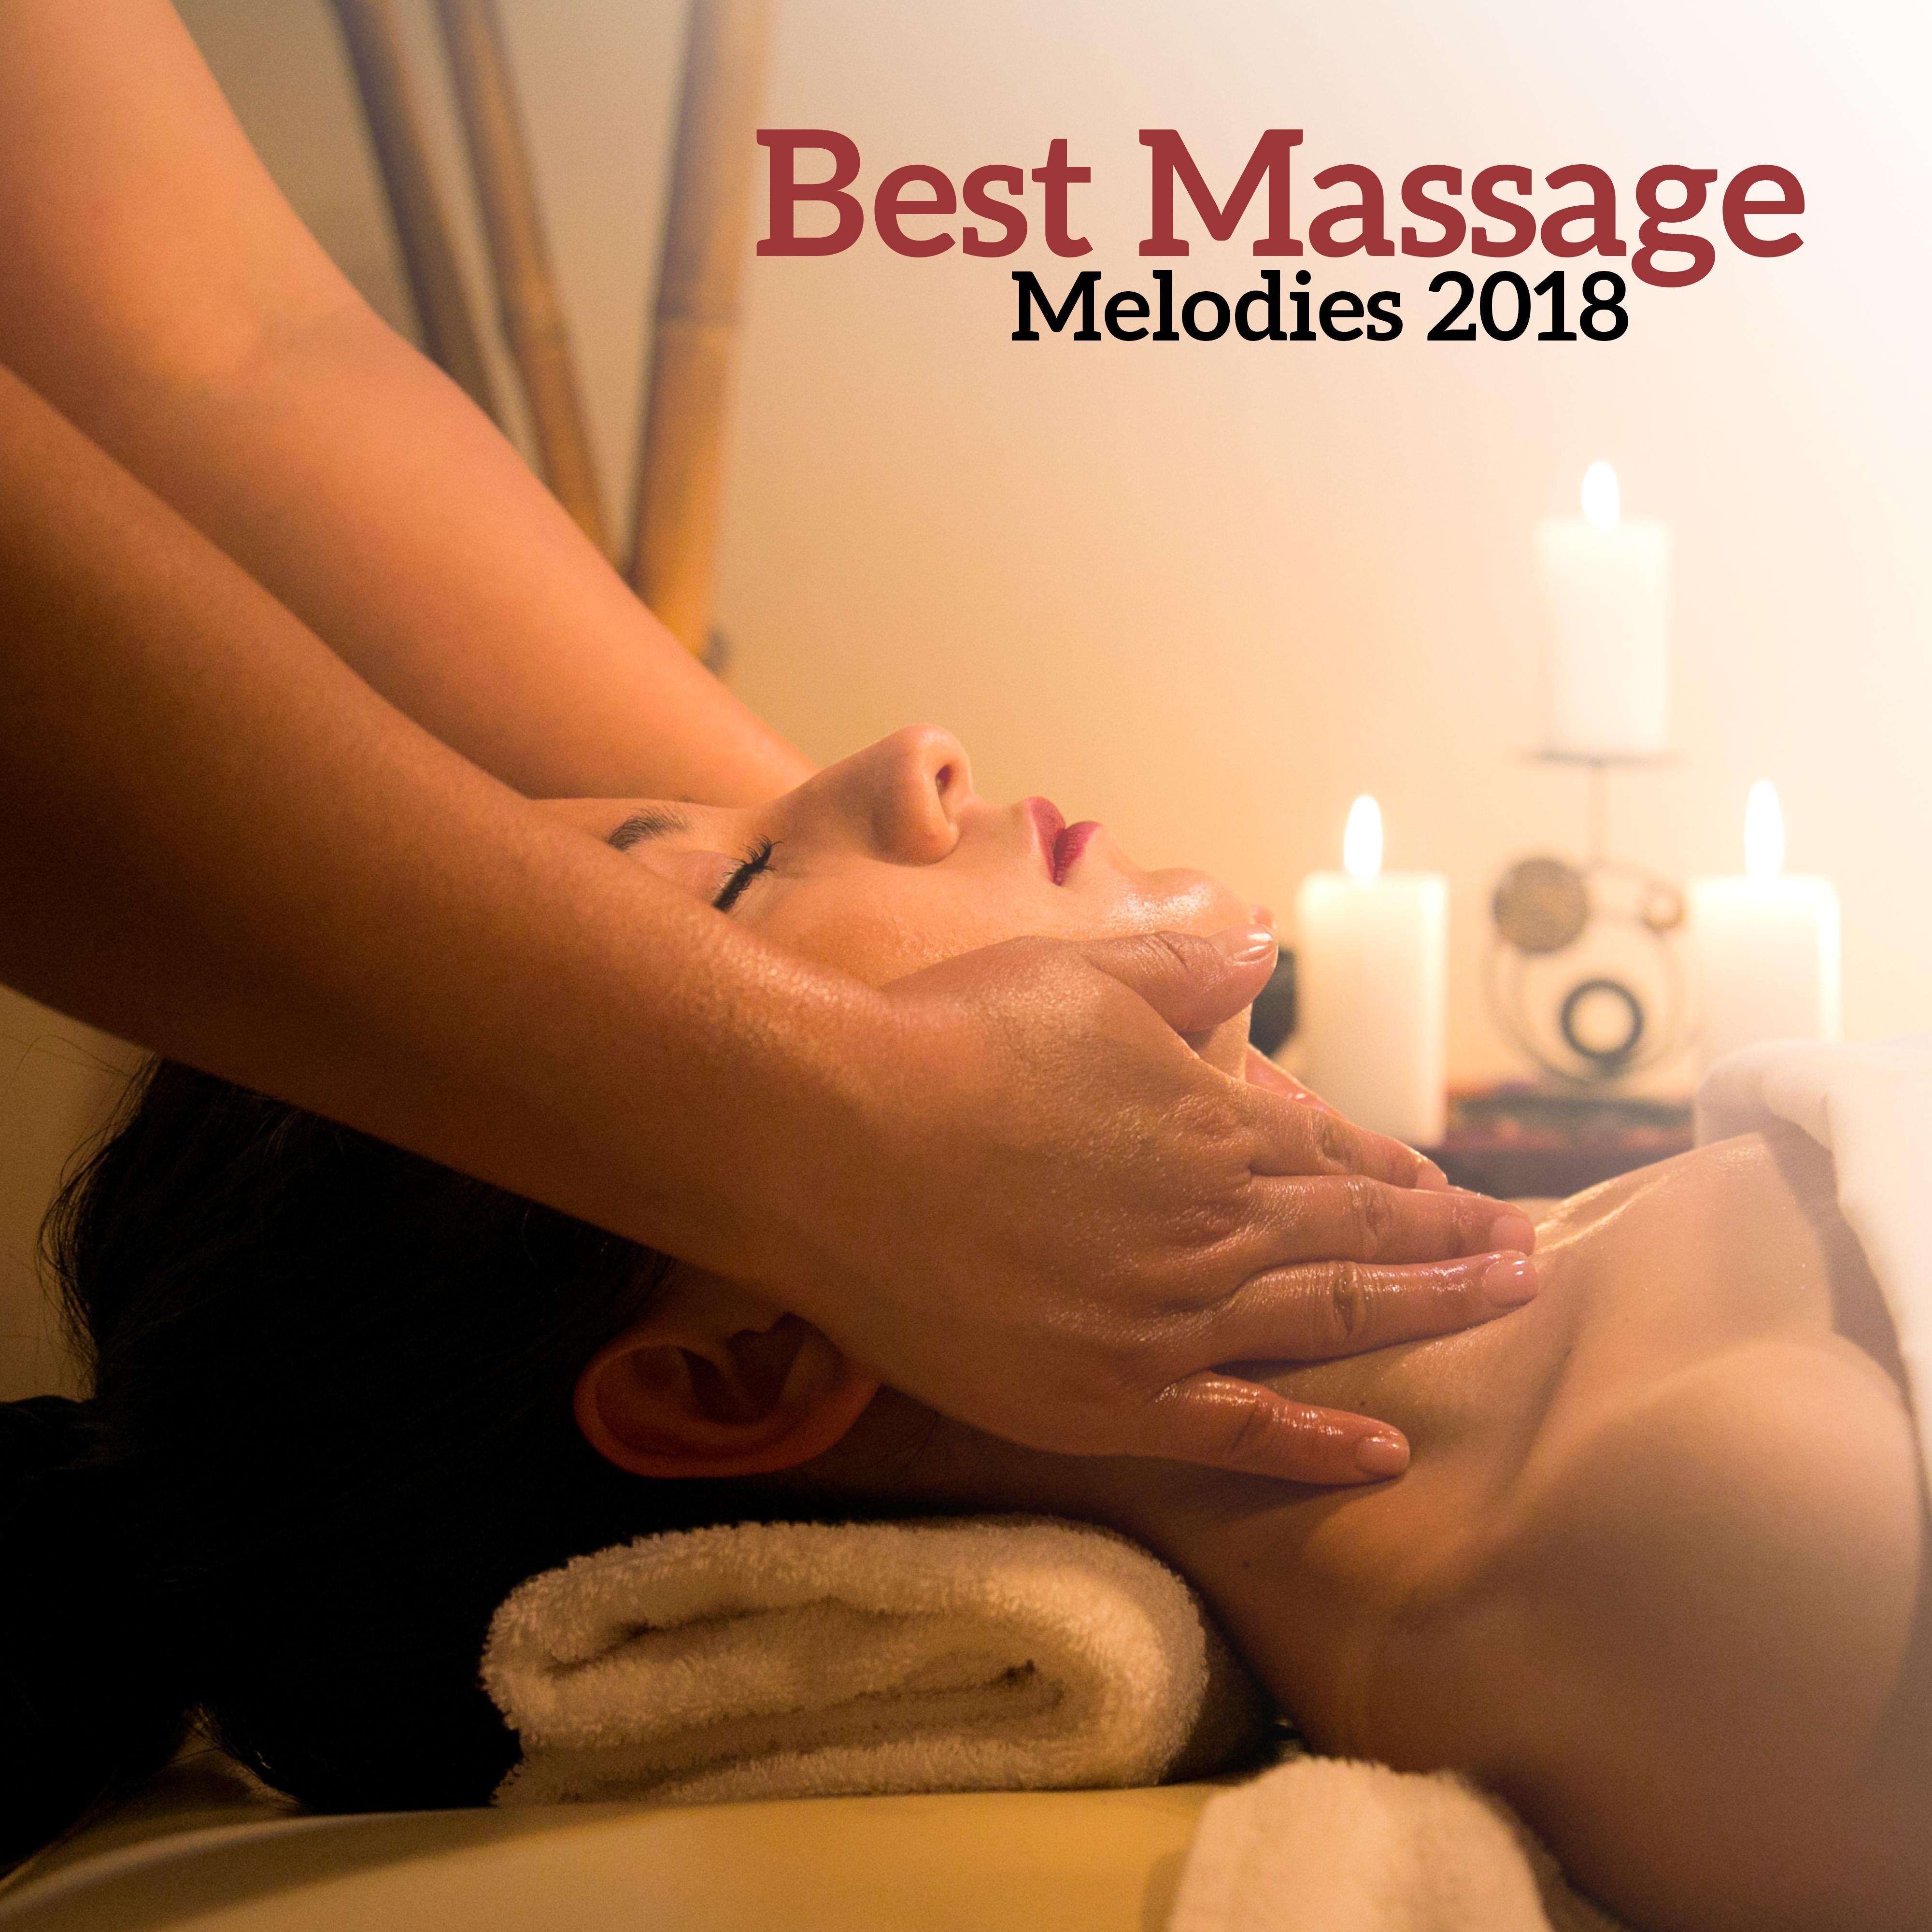 Best Massage Melodies 2018